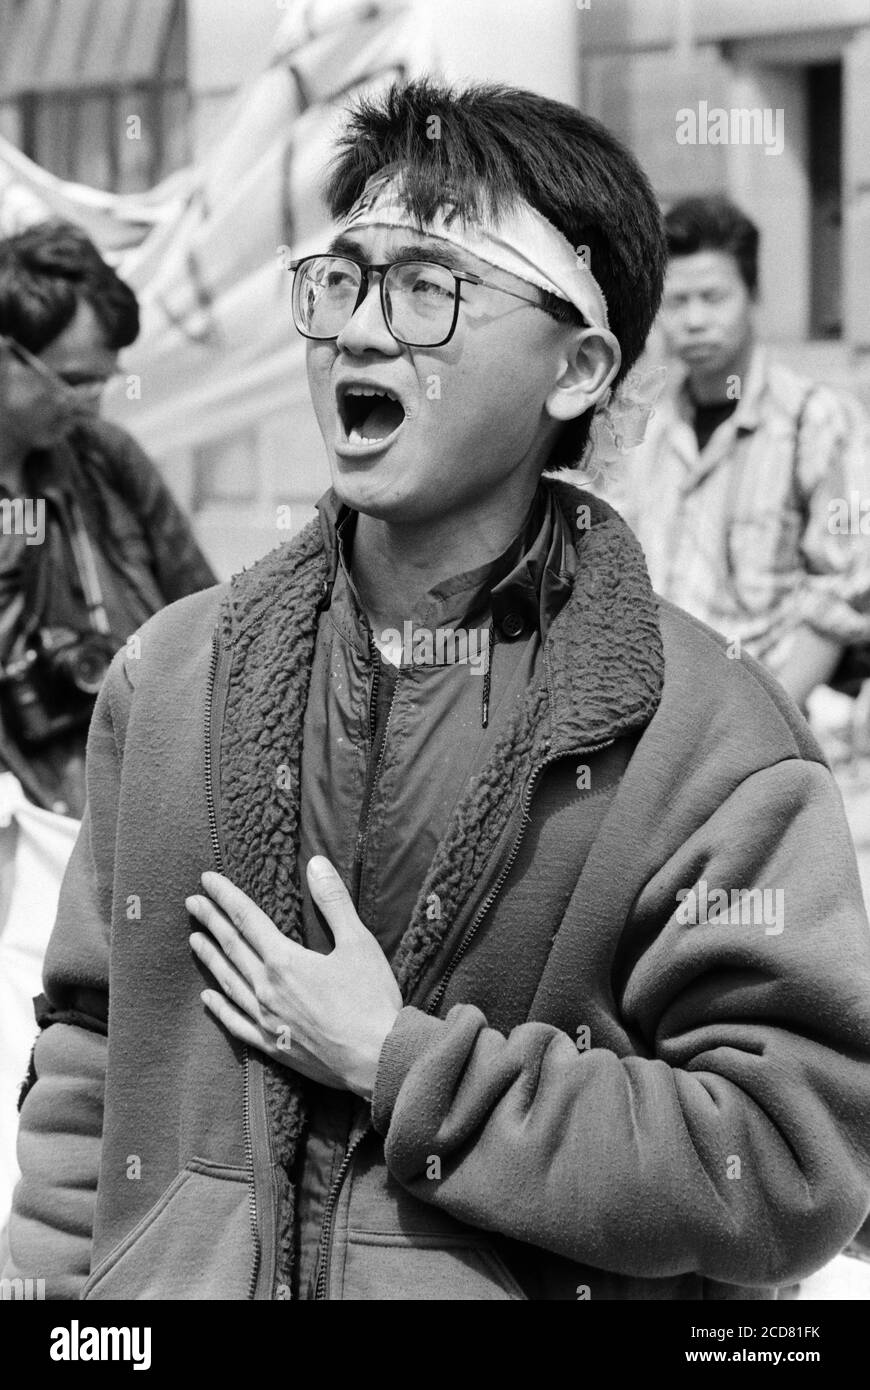 Streikposten der chinesischen Botschaft in der oberen Regent Street, um gegen die Aktionen der chinesischen Regierung auf dem Platz Tianenmen zu protestieren. London. 24. April 1989. Foto: Neil Turner Stockfoto